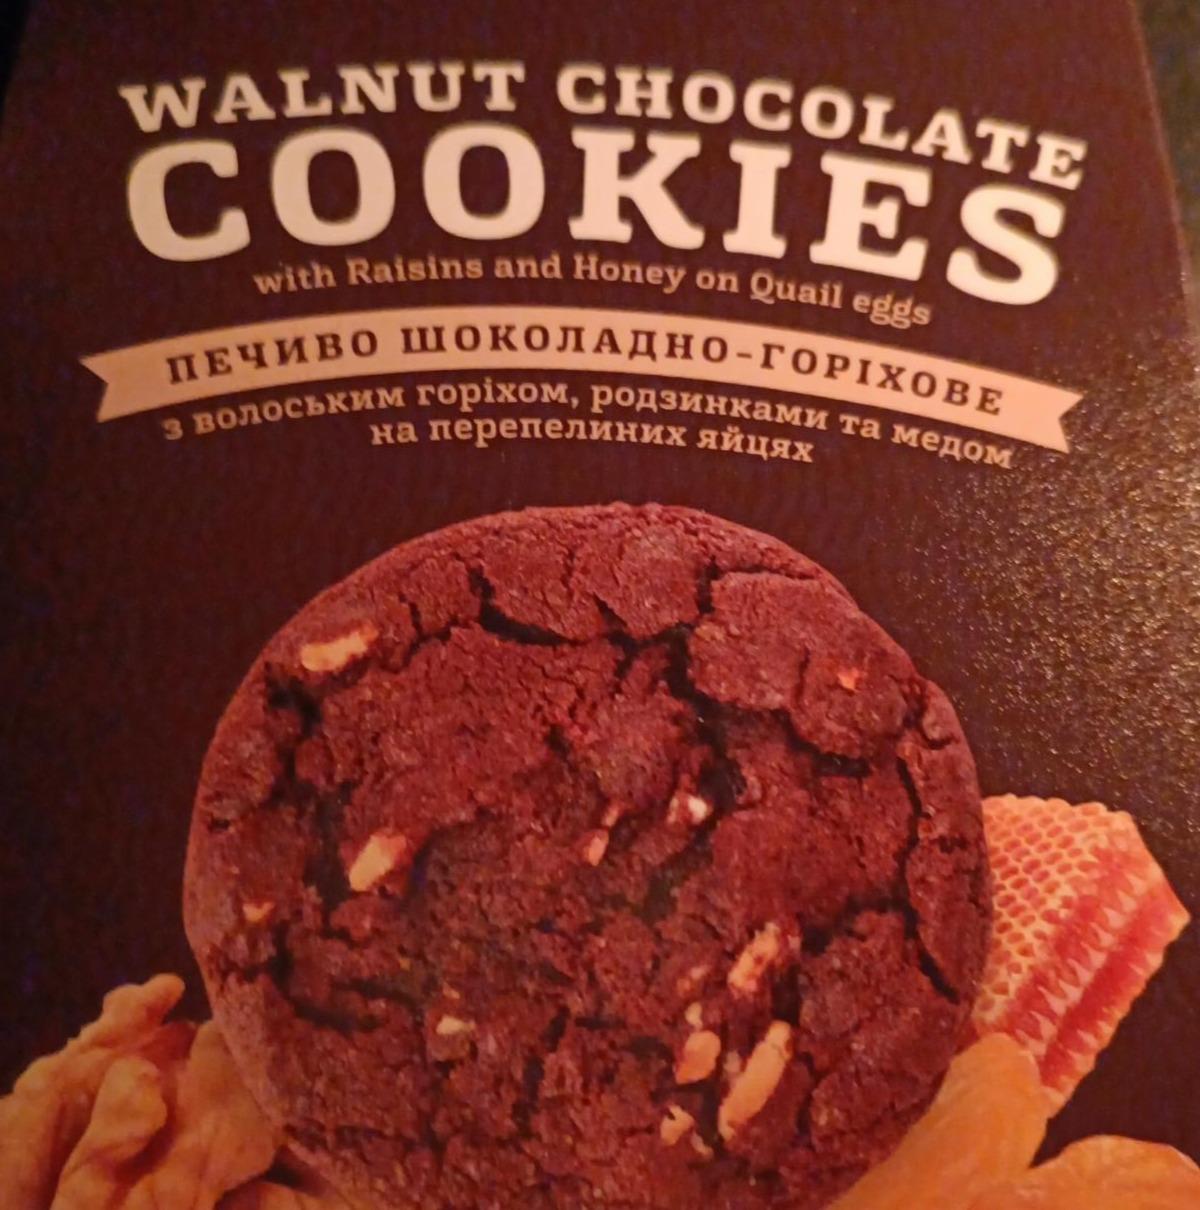 Фото - Печиво шоколадно-горіхове Walnut Chocolate Cookies MonLasa